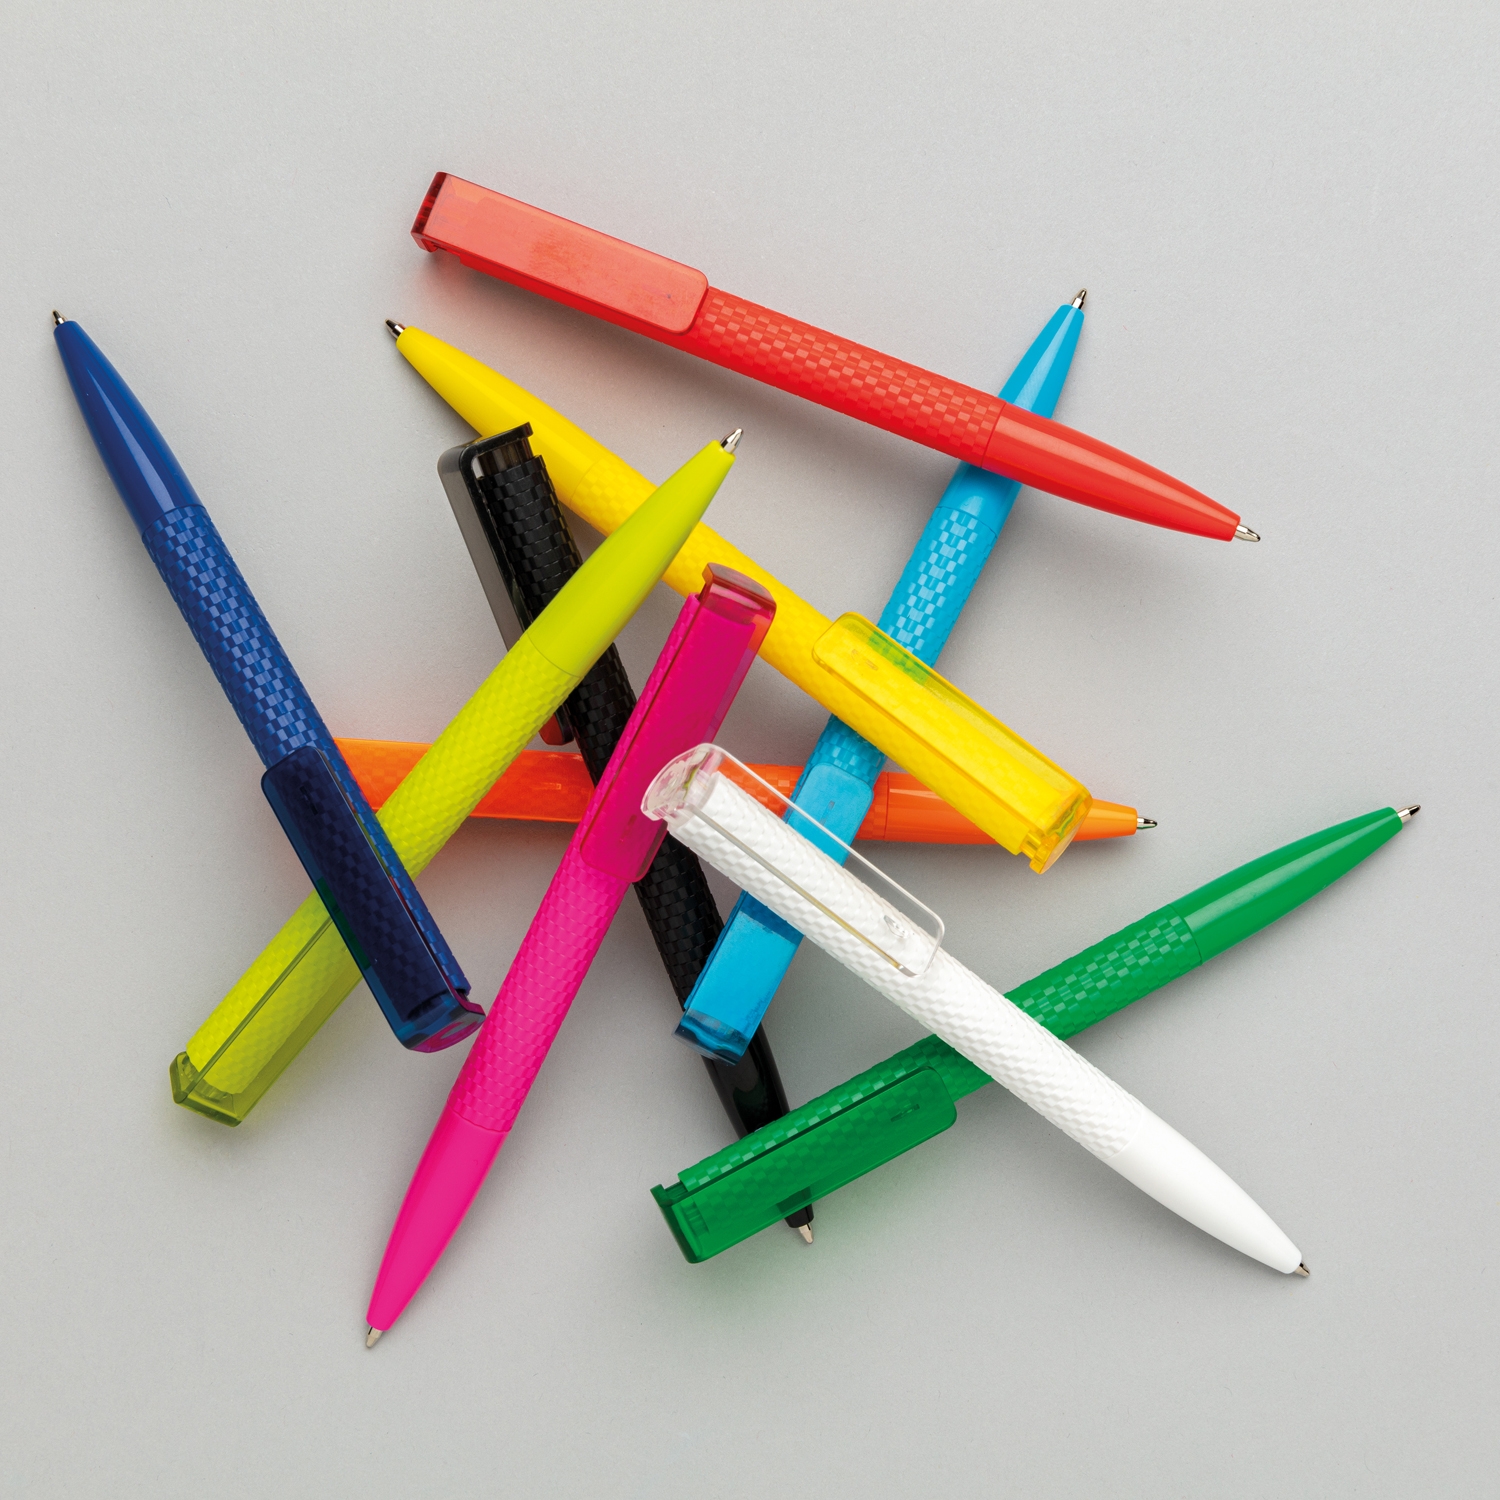 Ручка X7, синий, abs; pc